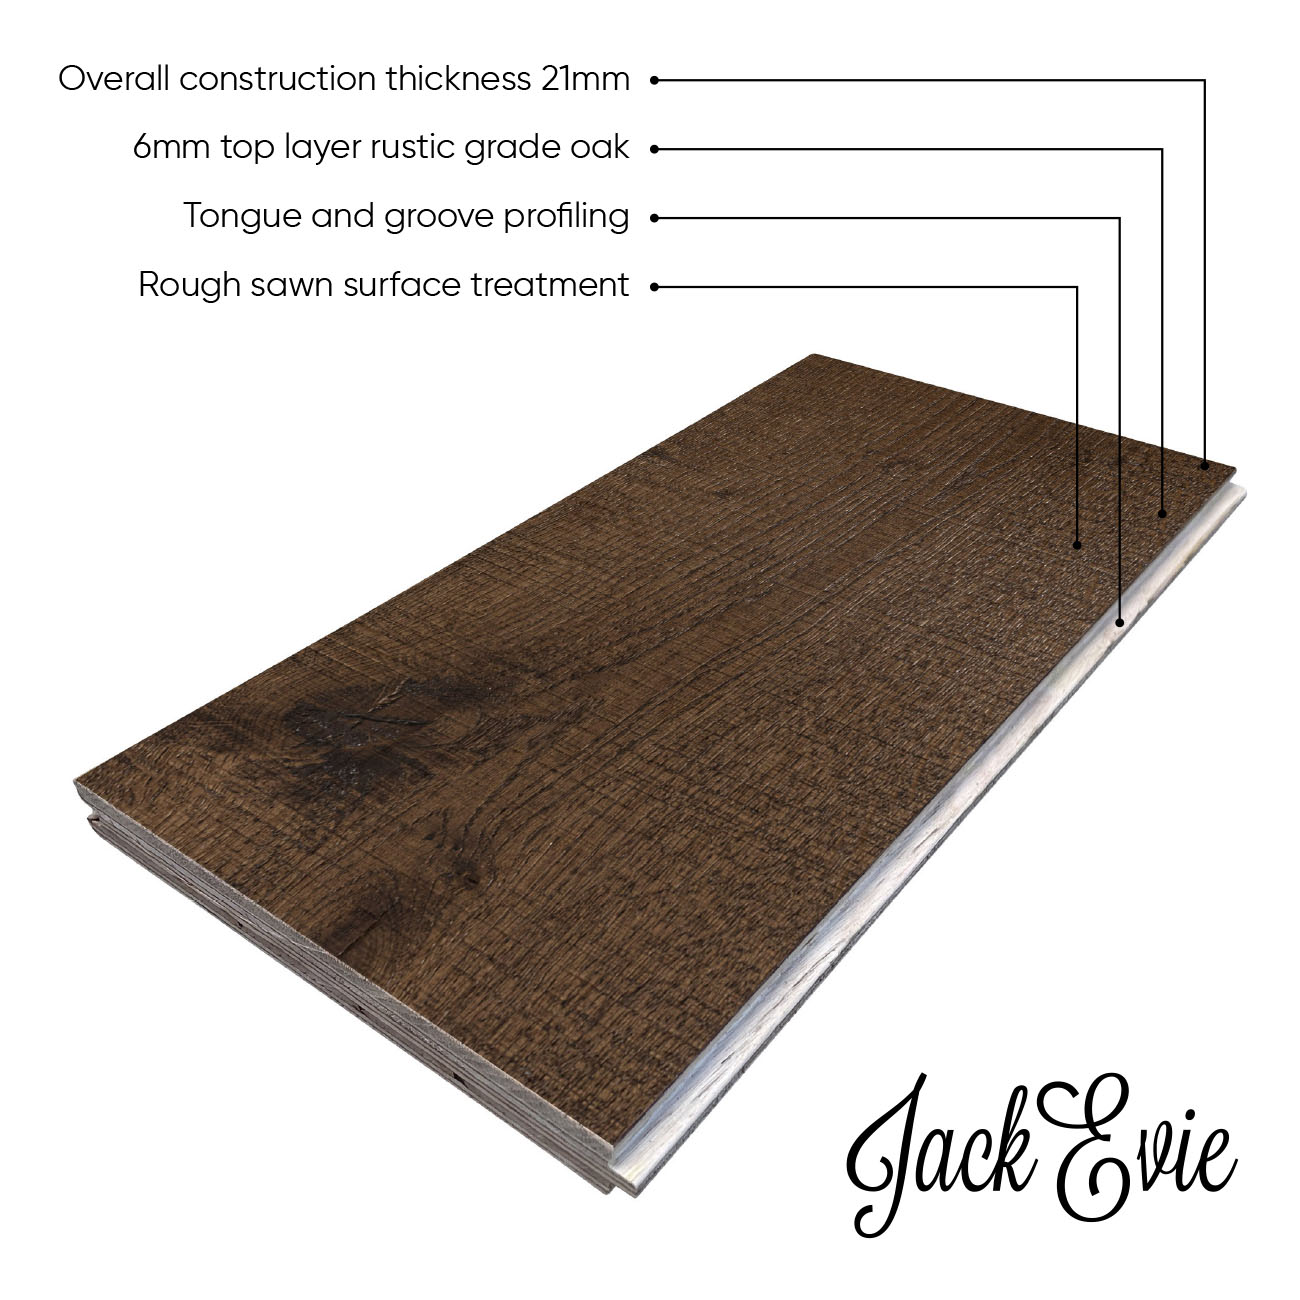 Chocolate brown oak mixed-width engineered wood flooring